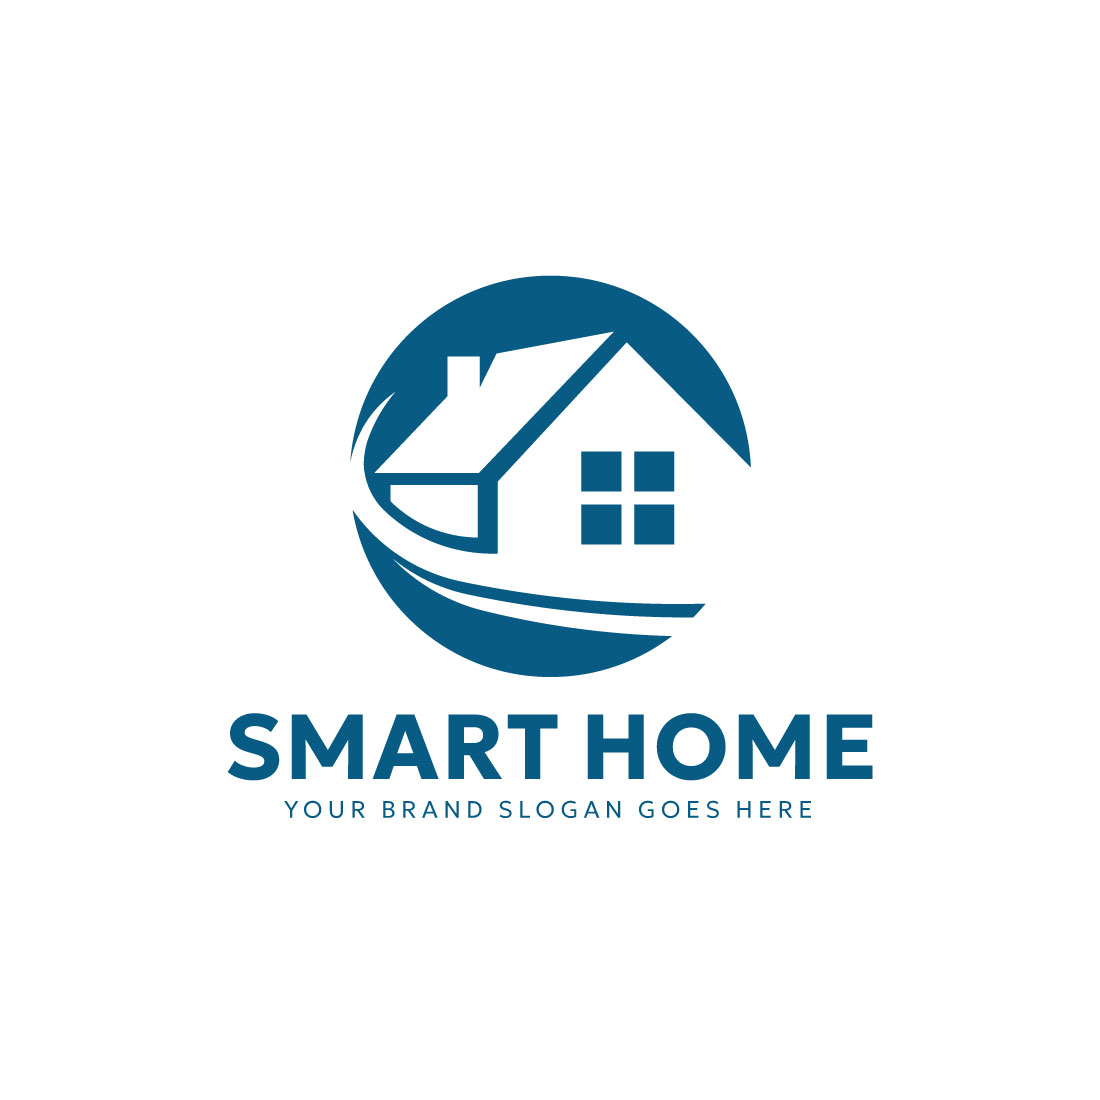 Smart Home Logo design preview image.